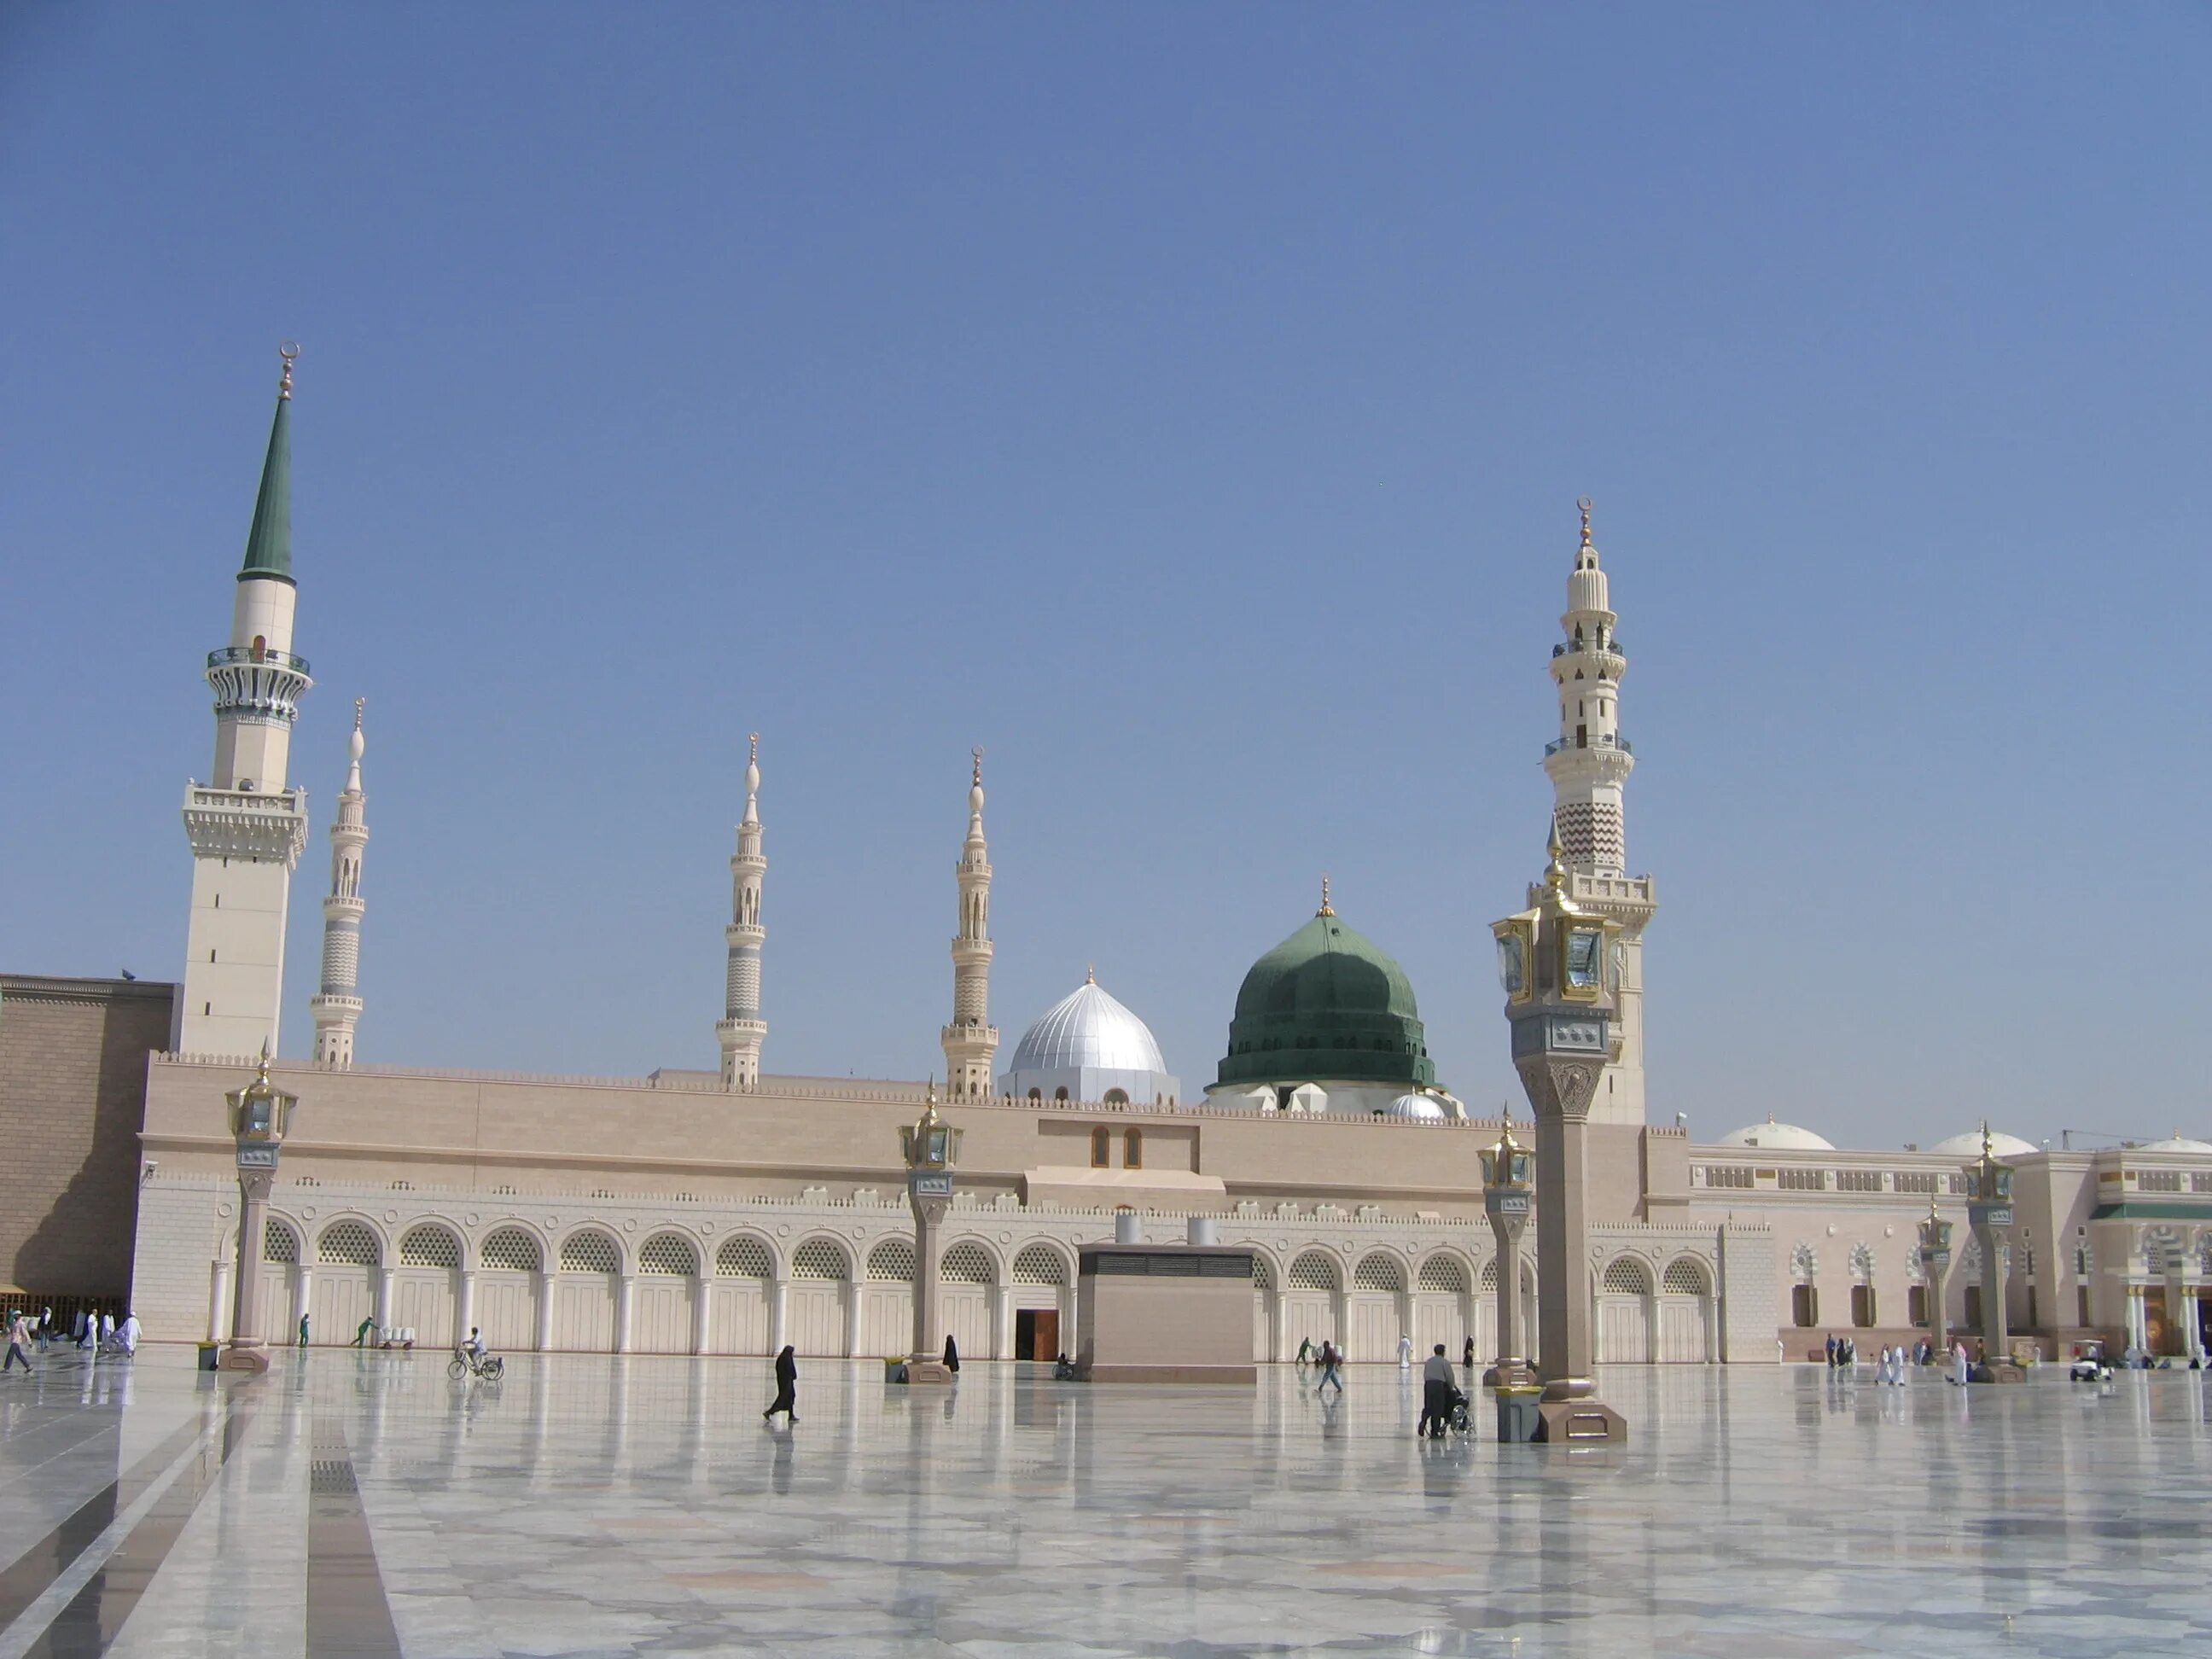 Медина что это. Масджид Аль-Наби Медина. Мечеть пророка (Масджид АН-Набави). Мечеть АН-Набави, Медина (Саудовская Аравия). Аль-Масджид АН-Набави в Медине.